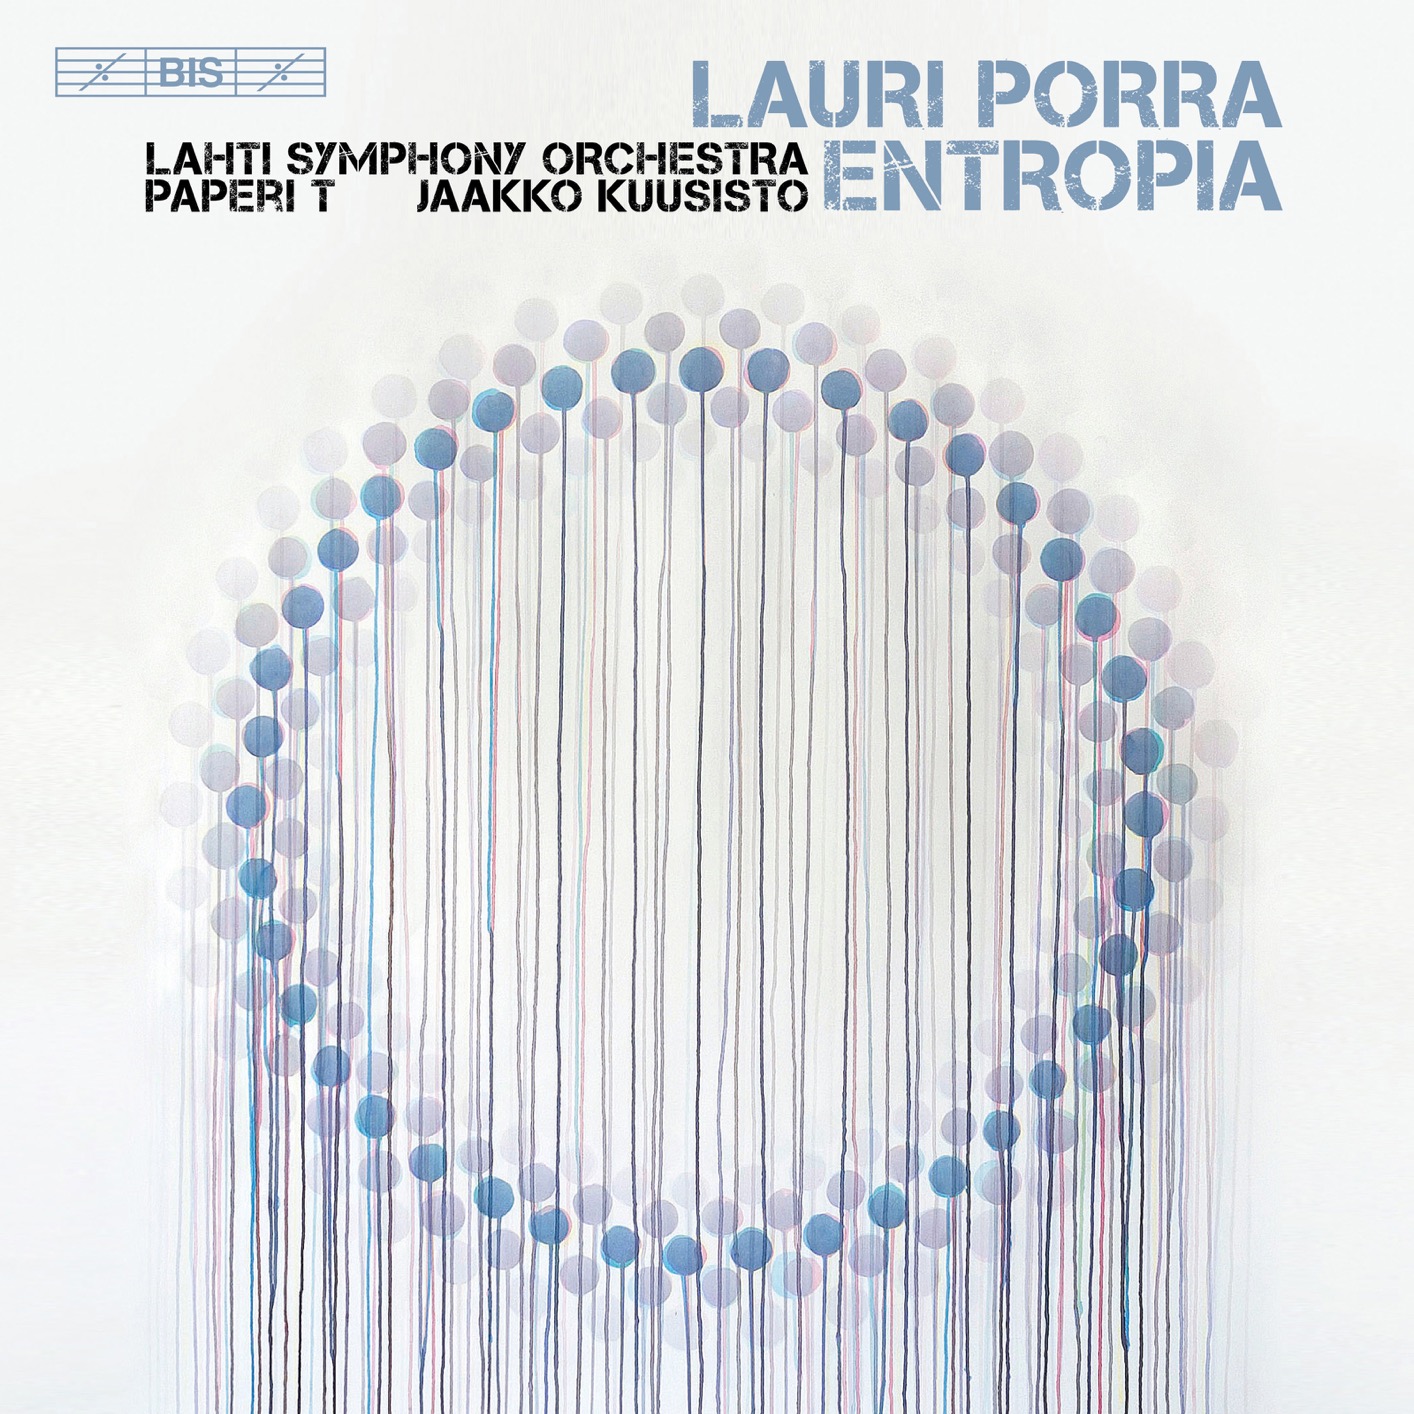 Lahti Symphony Orchestra & Jaakko Kuusisto – Lauri Porra: Entropia (2018) [FLAC 24bit/96kHz]